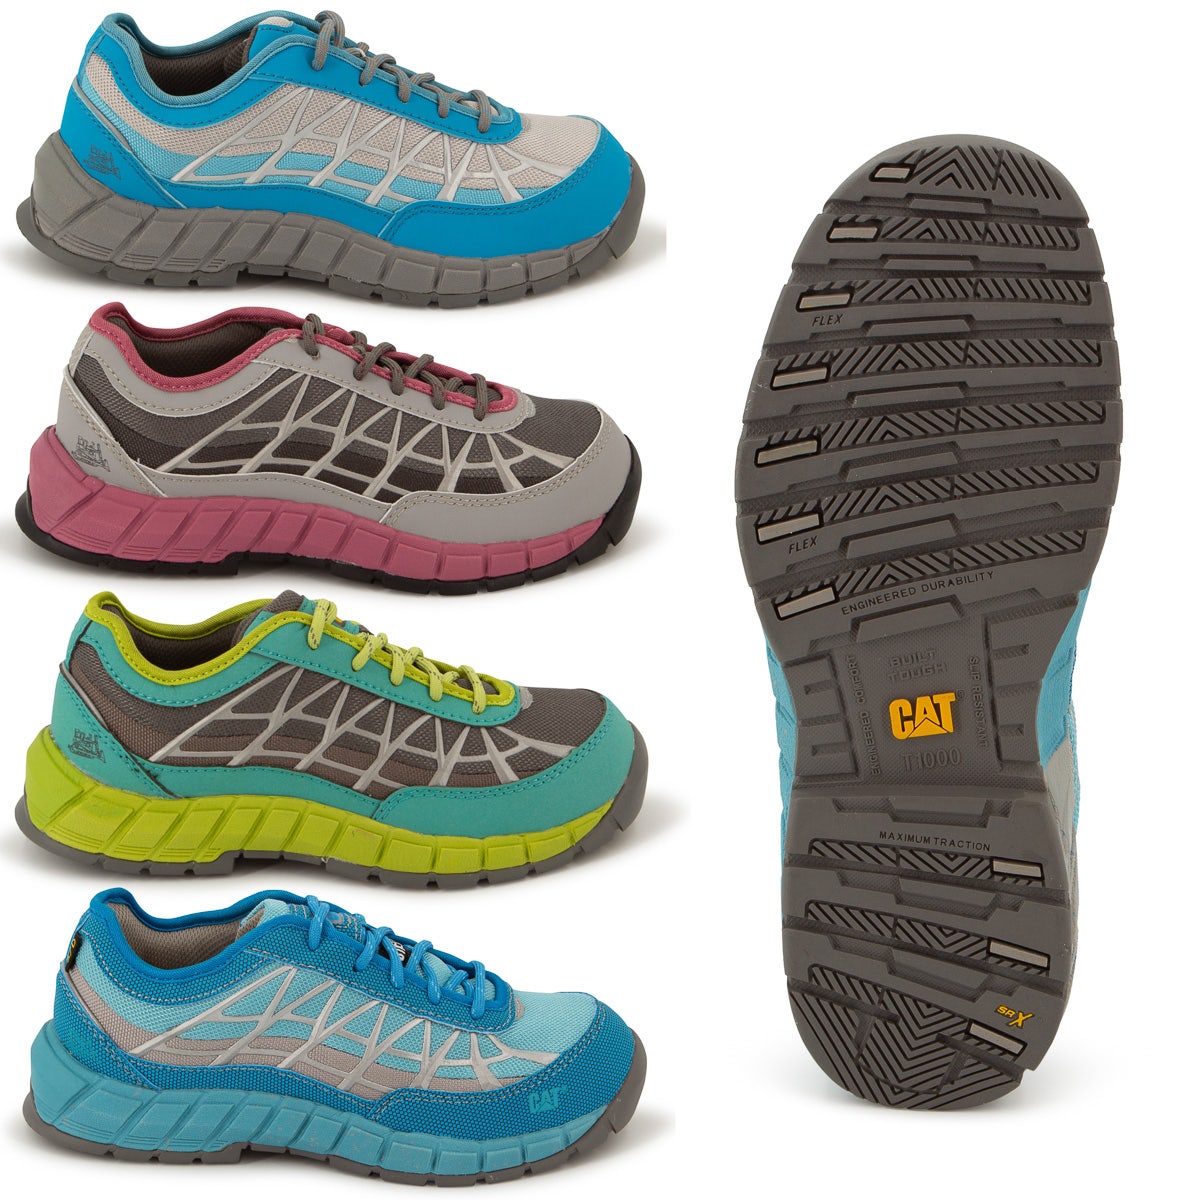 Caterpillar Connexion Women's Shoes – Steel Toe Work Comfort